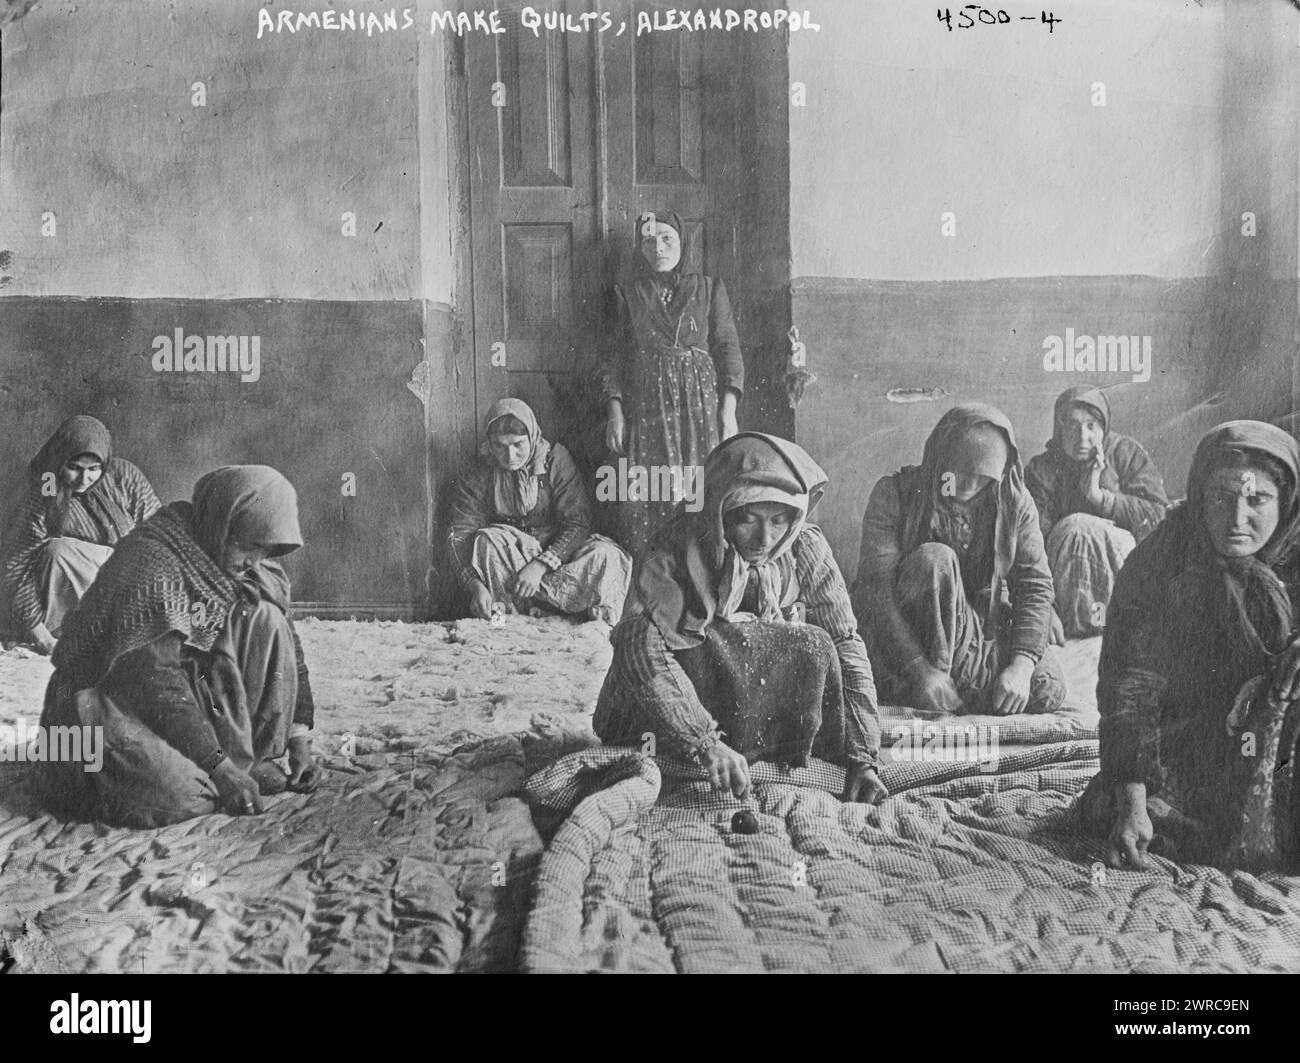 Gli armeni fanno trapunte, Alexandropol, foto mostra donne armene che fanno trapunte ad Alexandropol (ora Gyumri), Armenia., 1918 marzo 7, Glass negatives, 1 negativo: Vetro Foto Stock